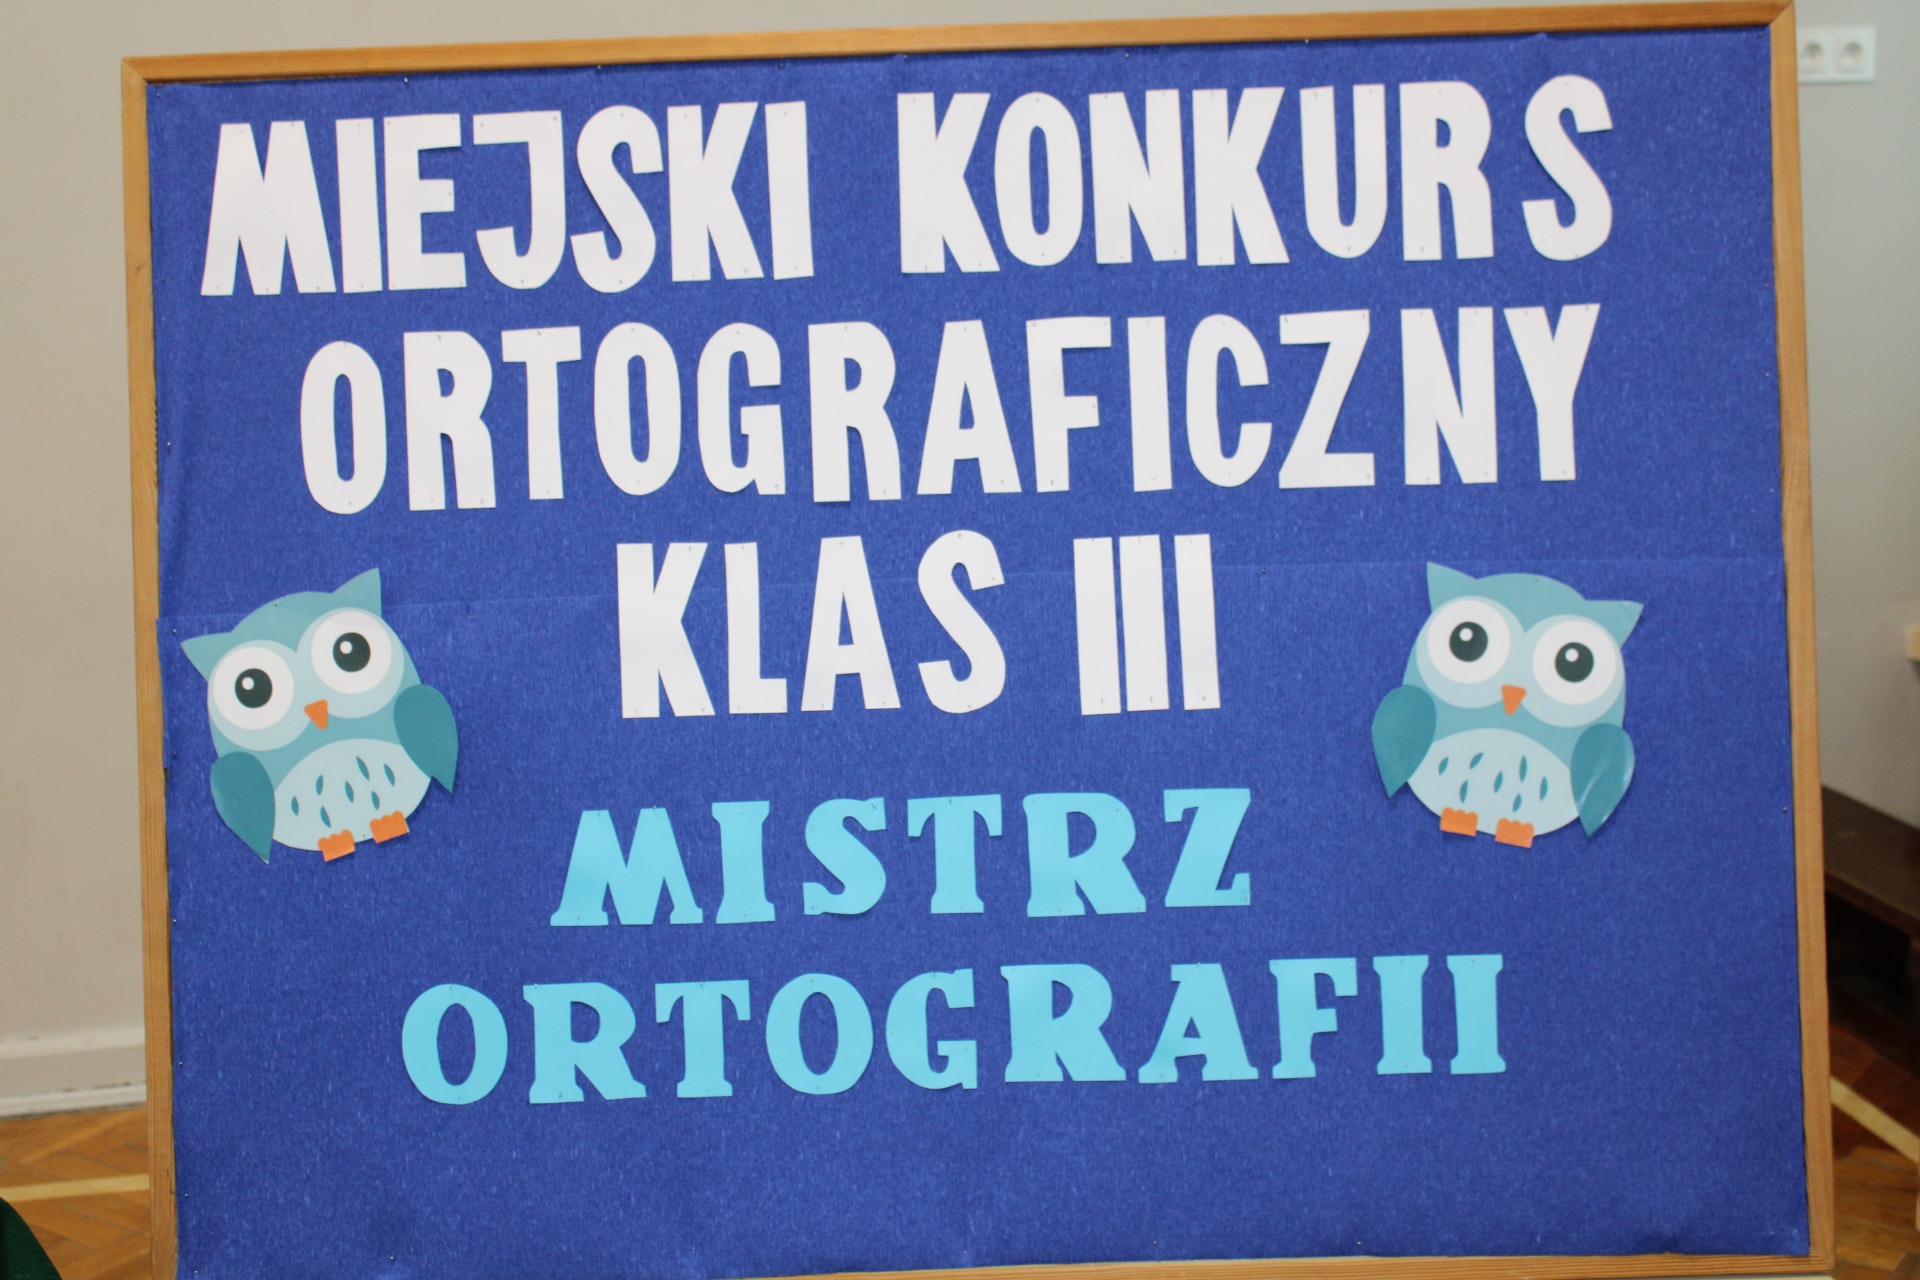 Miejski Konkurs Ortograficzny klas III  MISTRZ  ORTOGRAFII rozstrzygnięty! - Obrazek 1